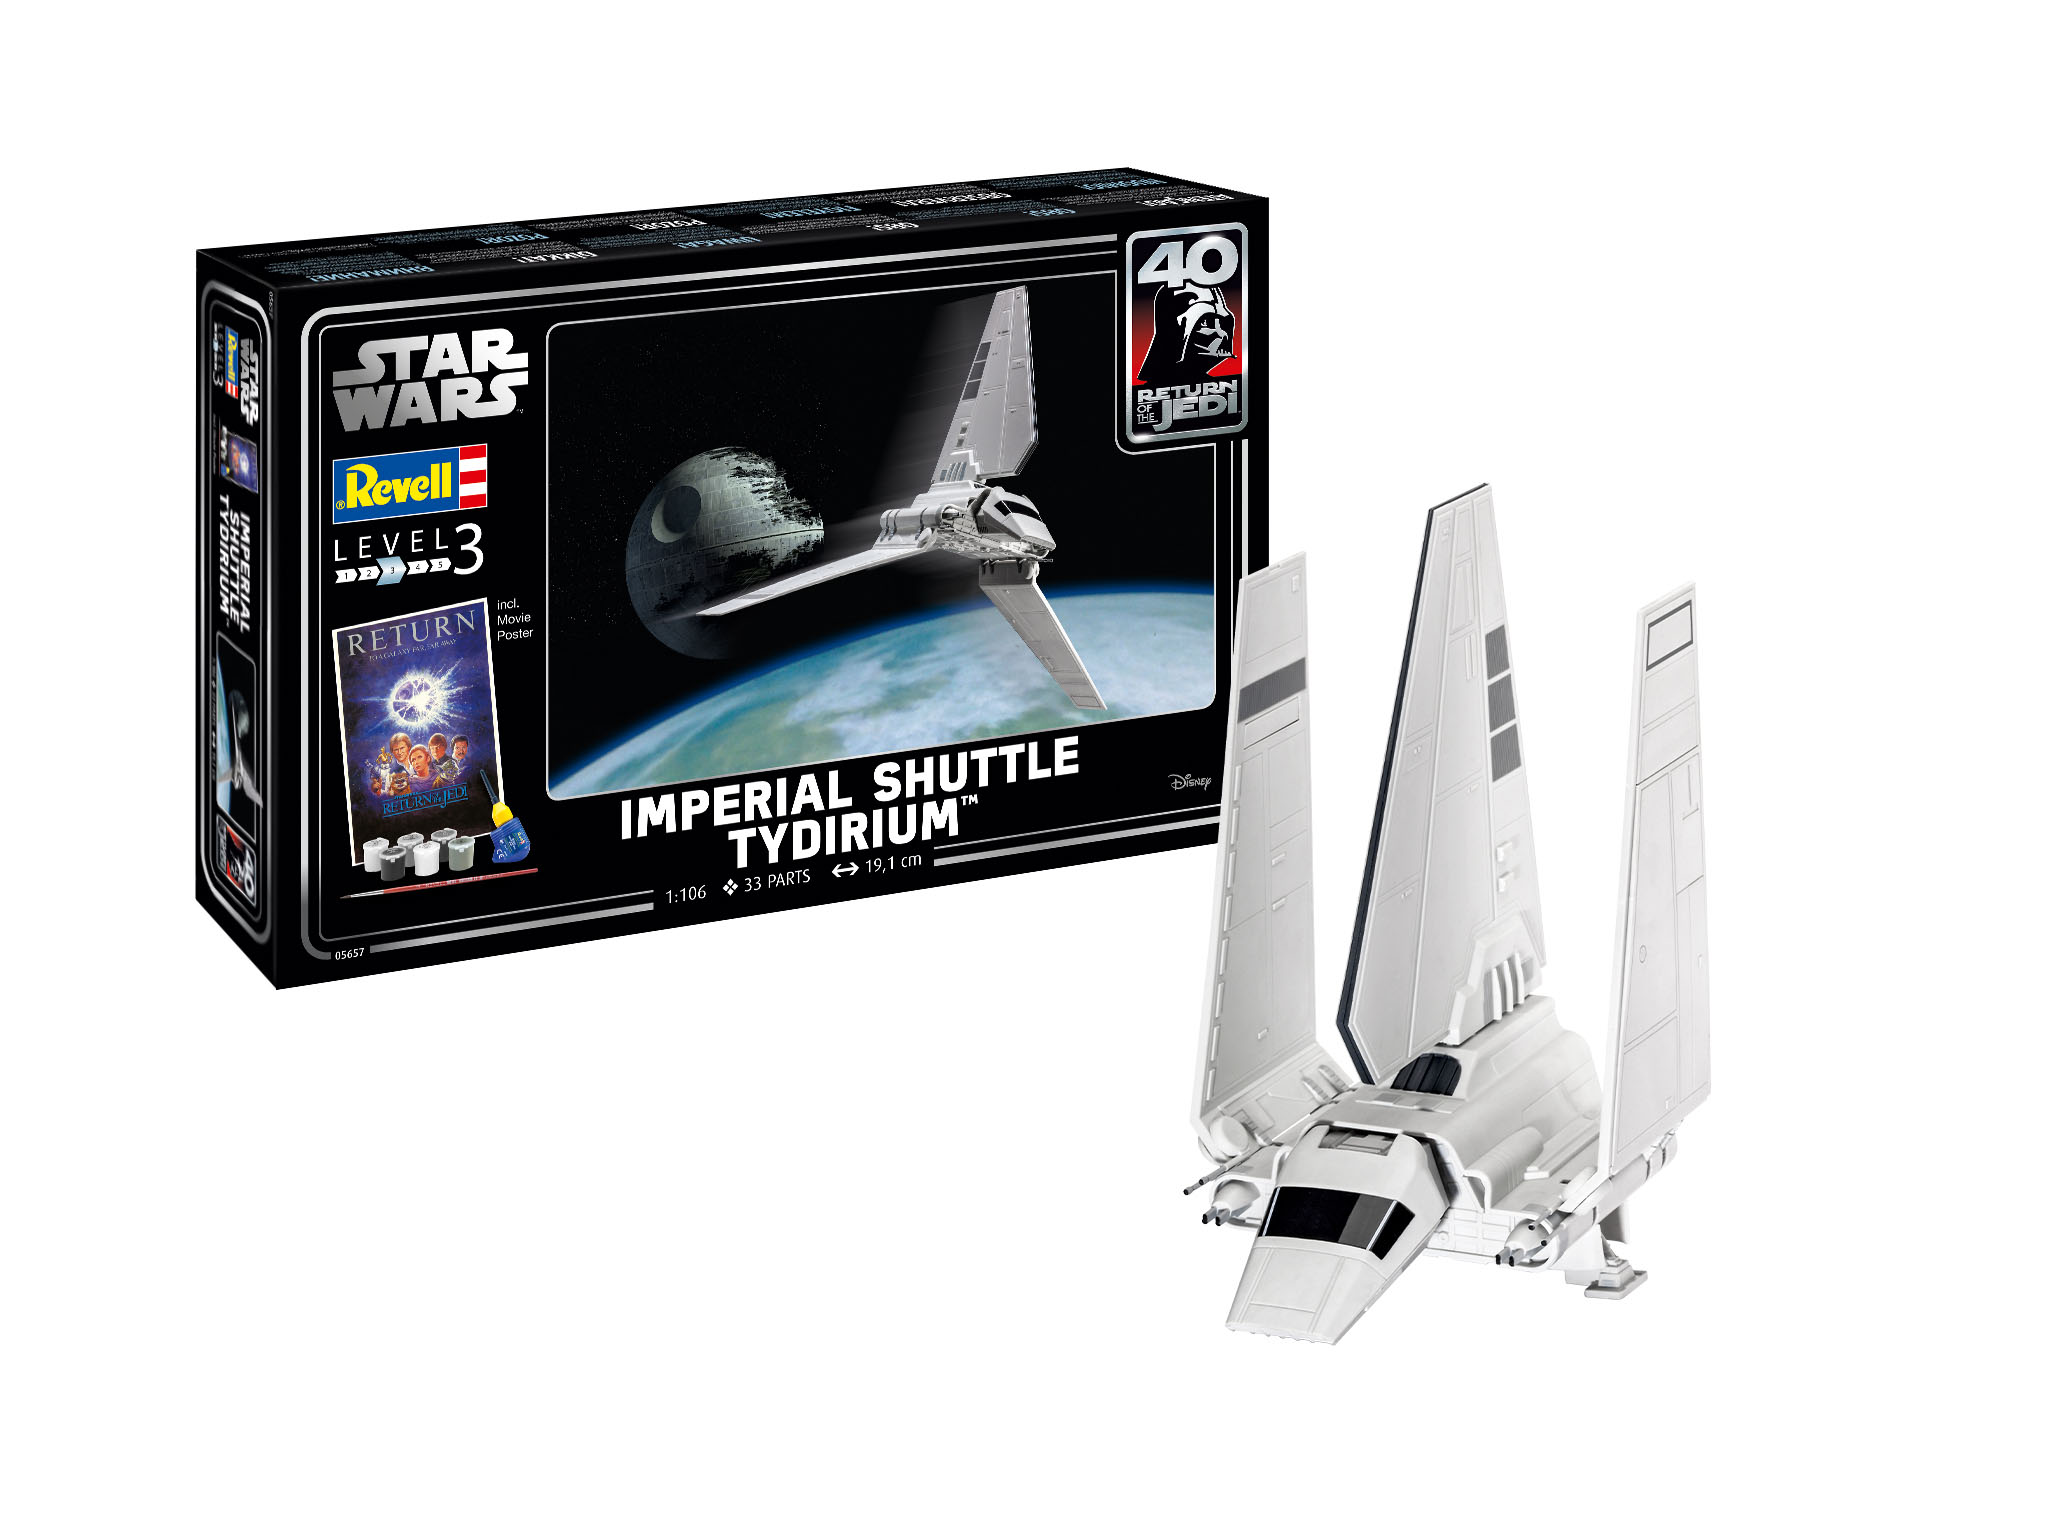 Revell 05657 Imperial Shuttle Tydirium Star Wars Gift Set  